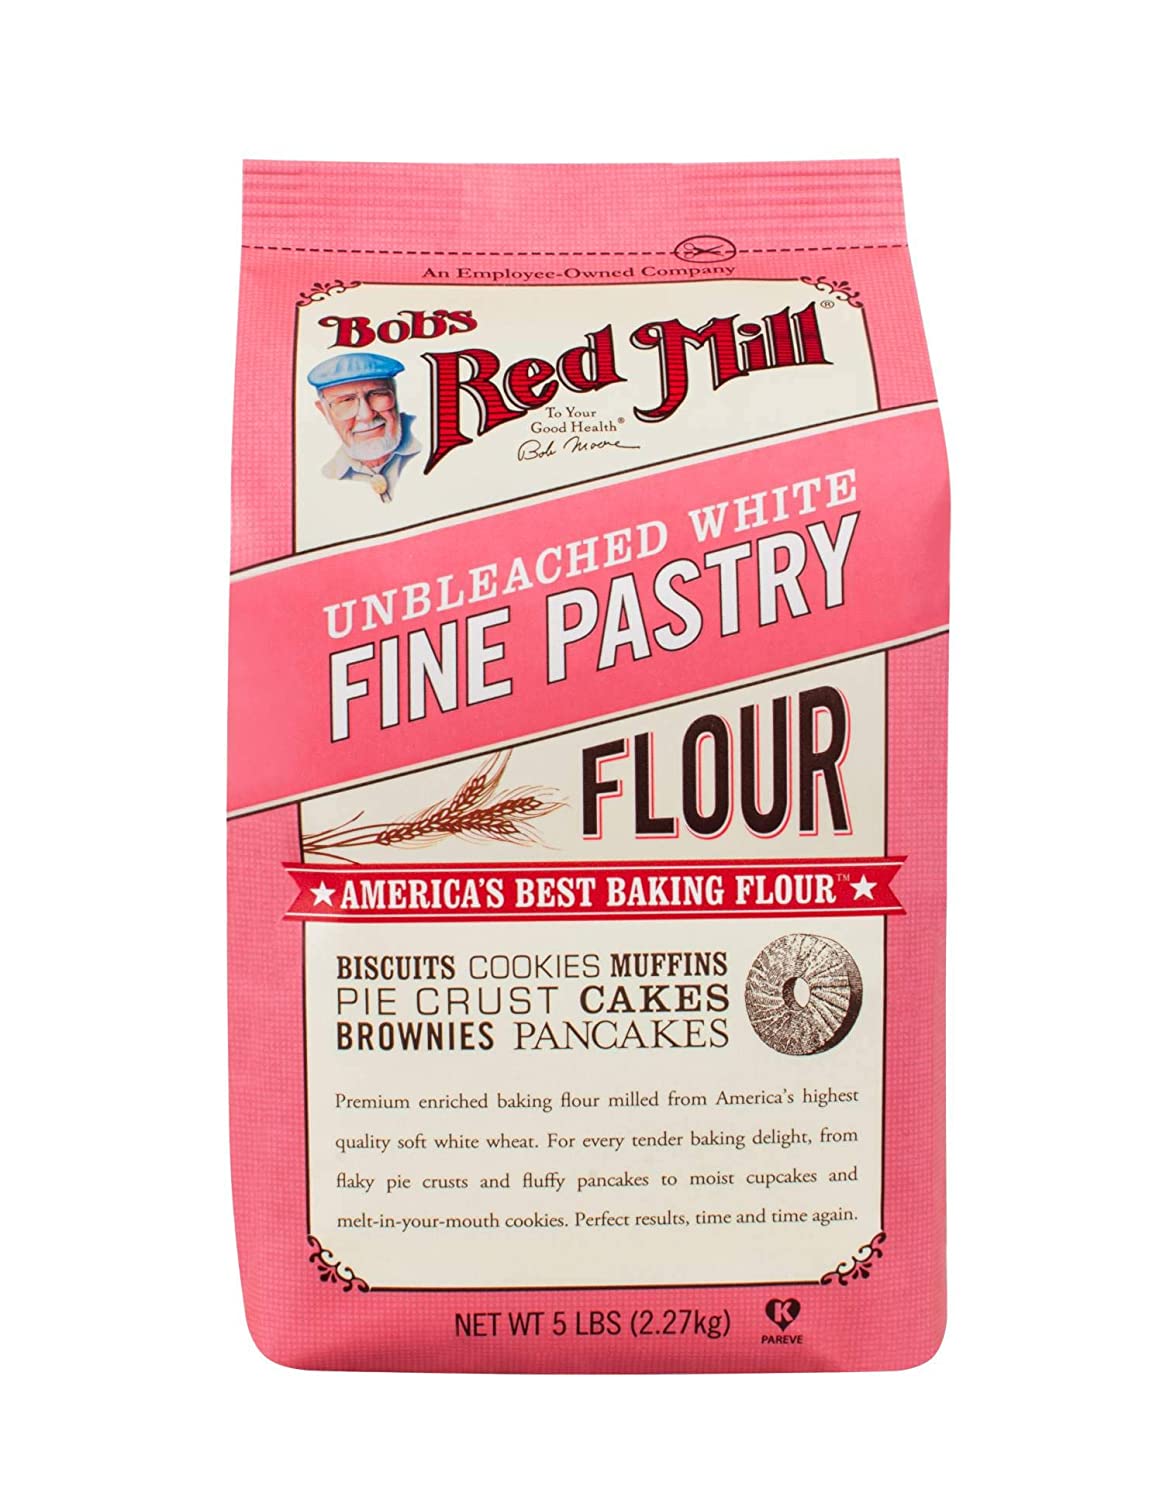 A farinha de pastelaria é um dos melhores substitutos para a farinha de trigo